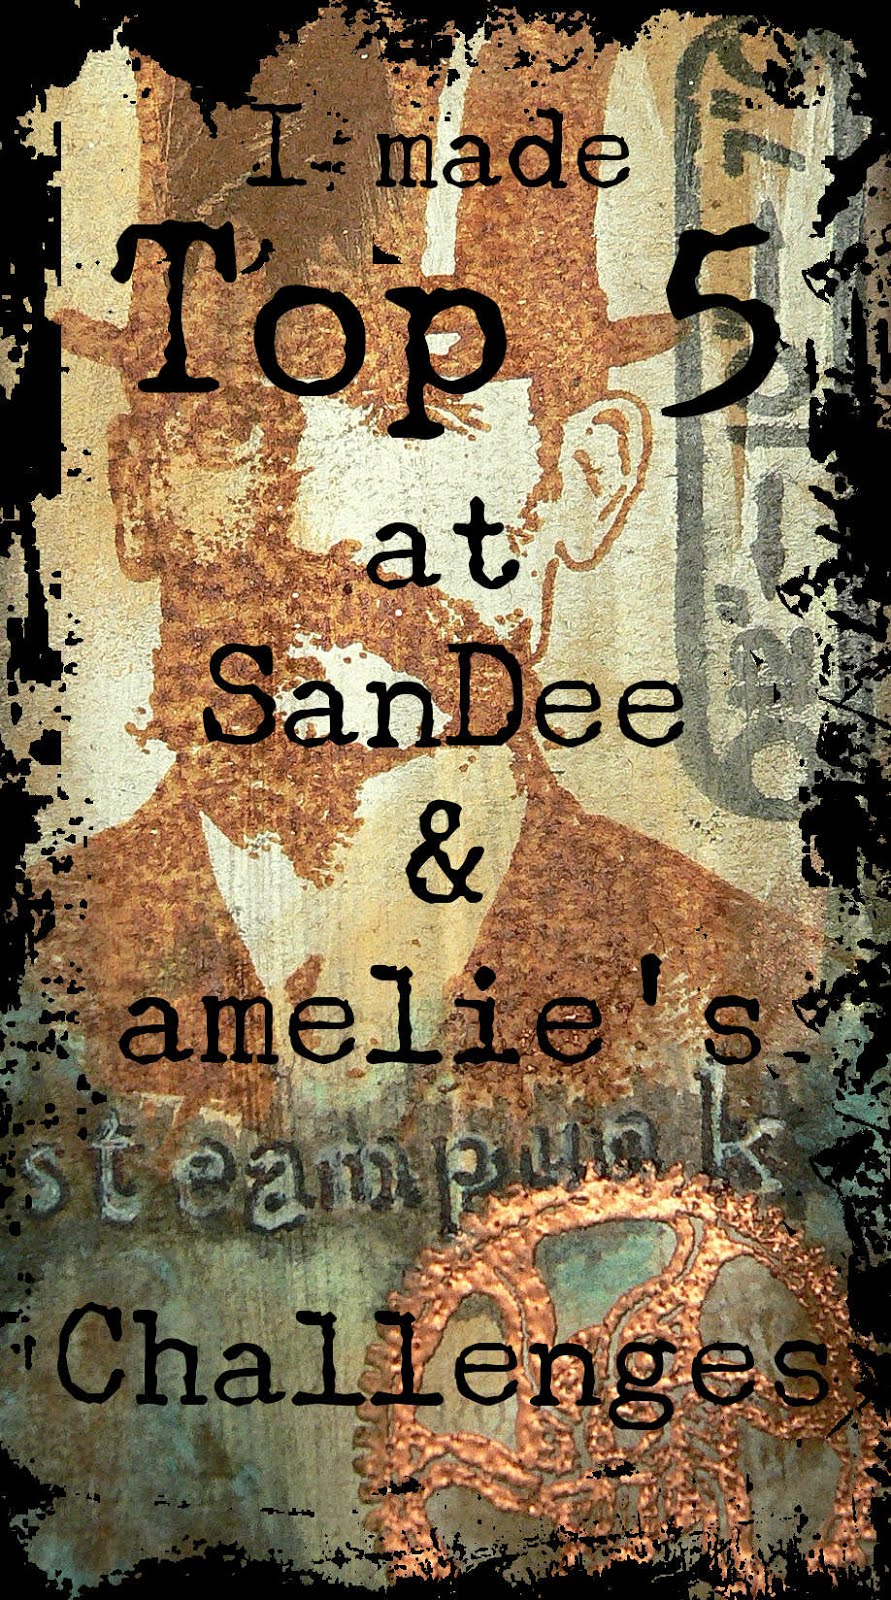 SanDee & amelie's Steampunk Challenges